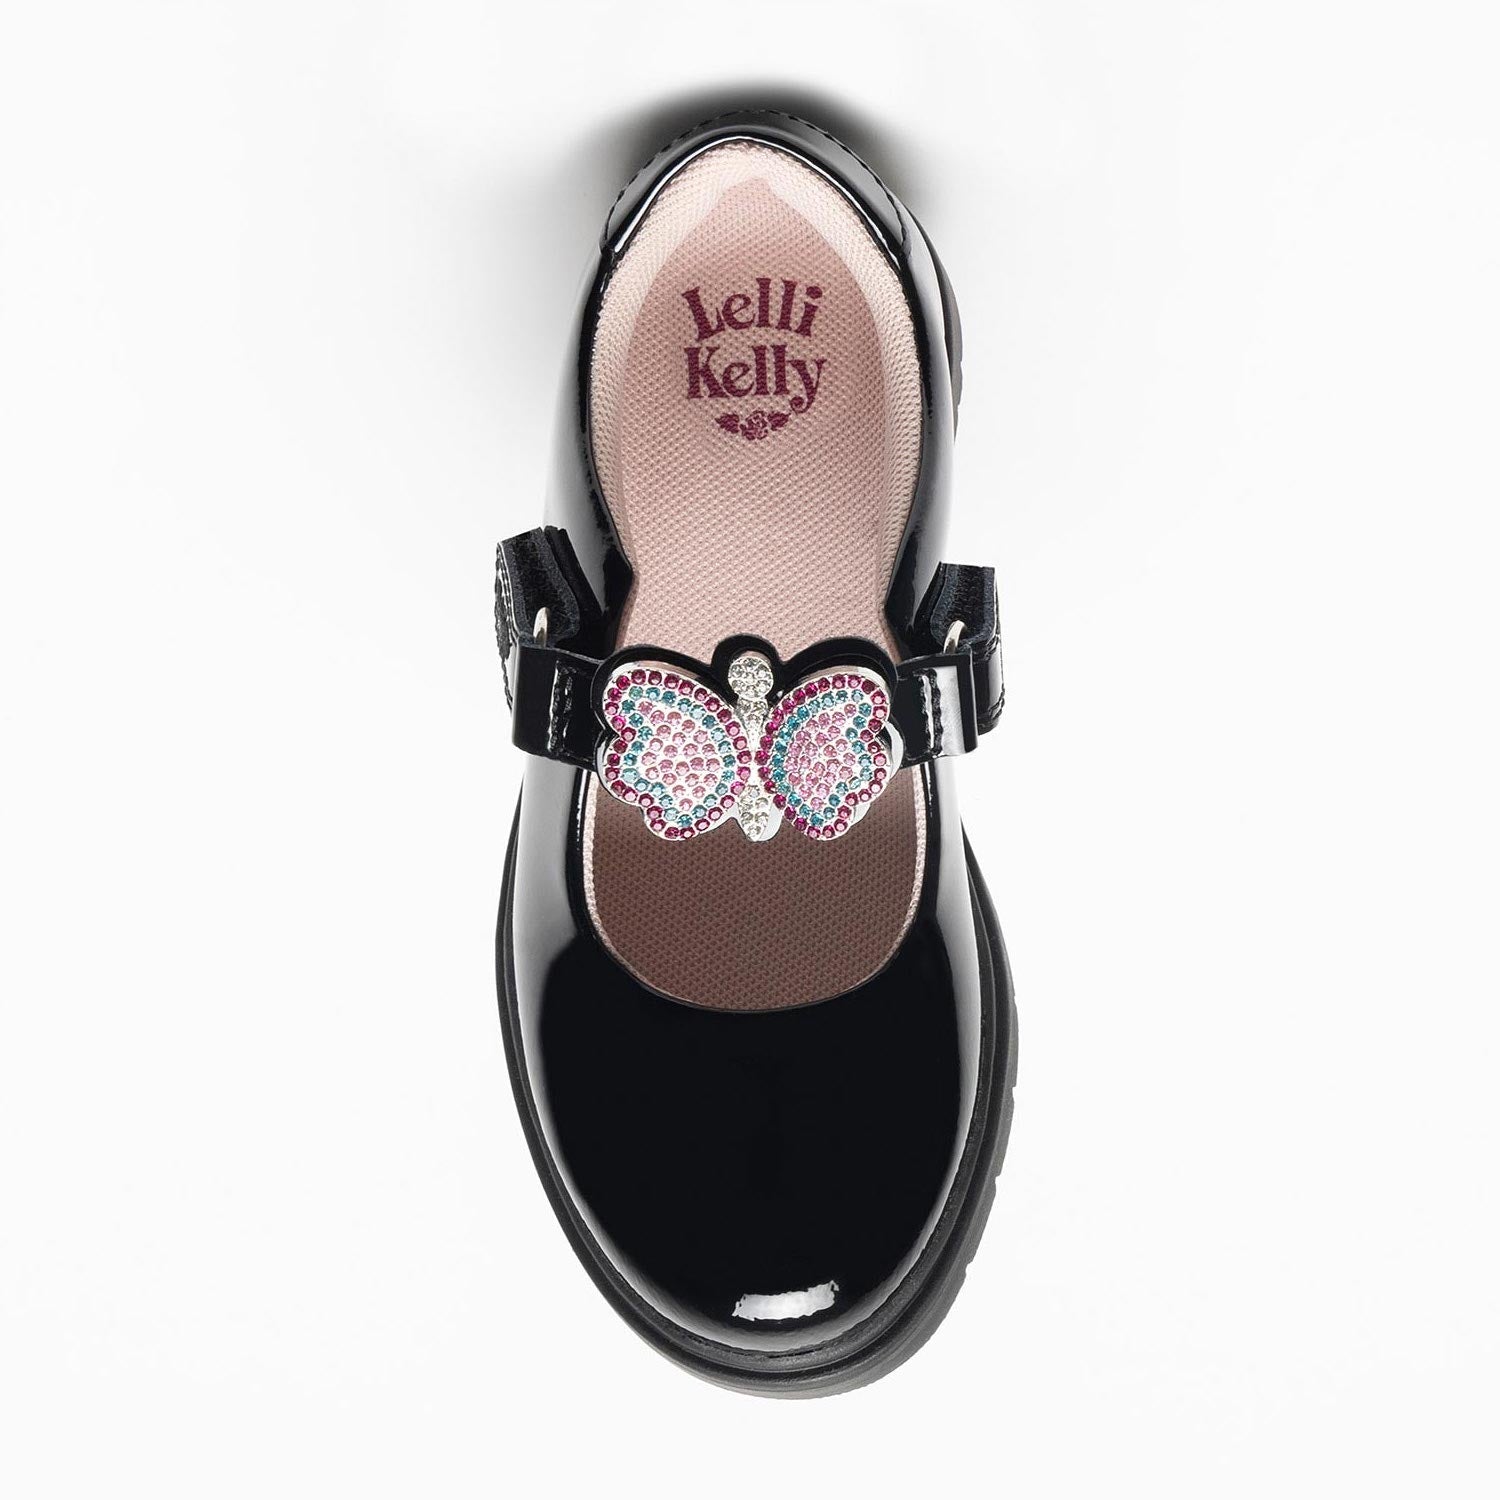 Lelli Kelly Luna 3 Butterfly Black Patent Girls School Shoes